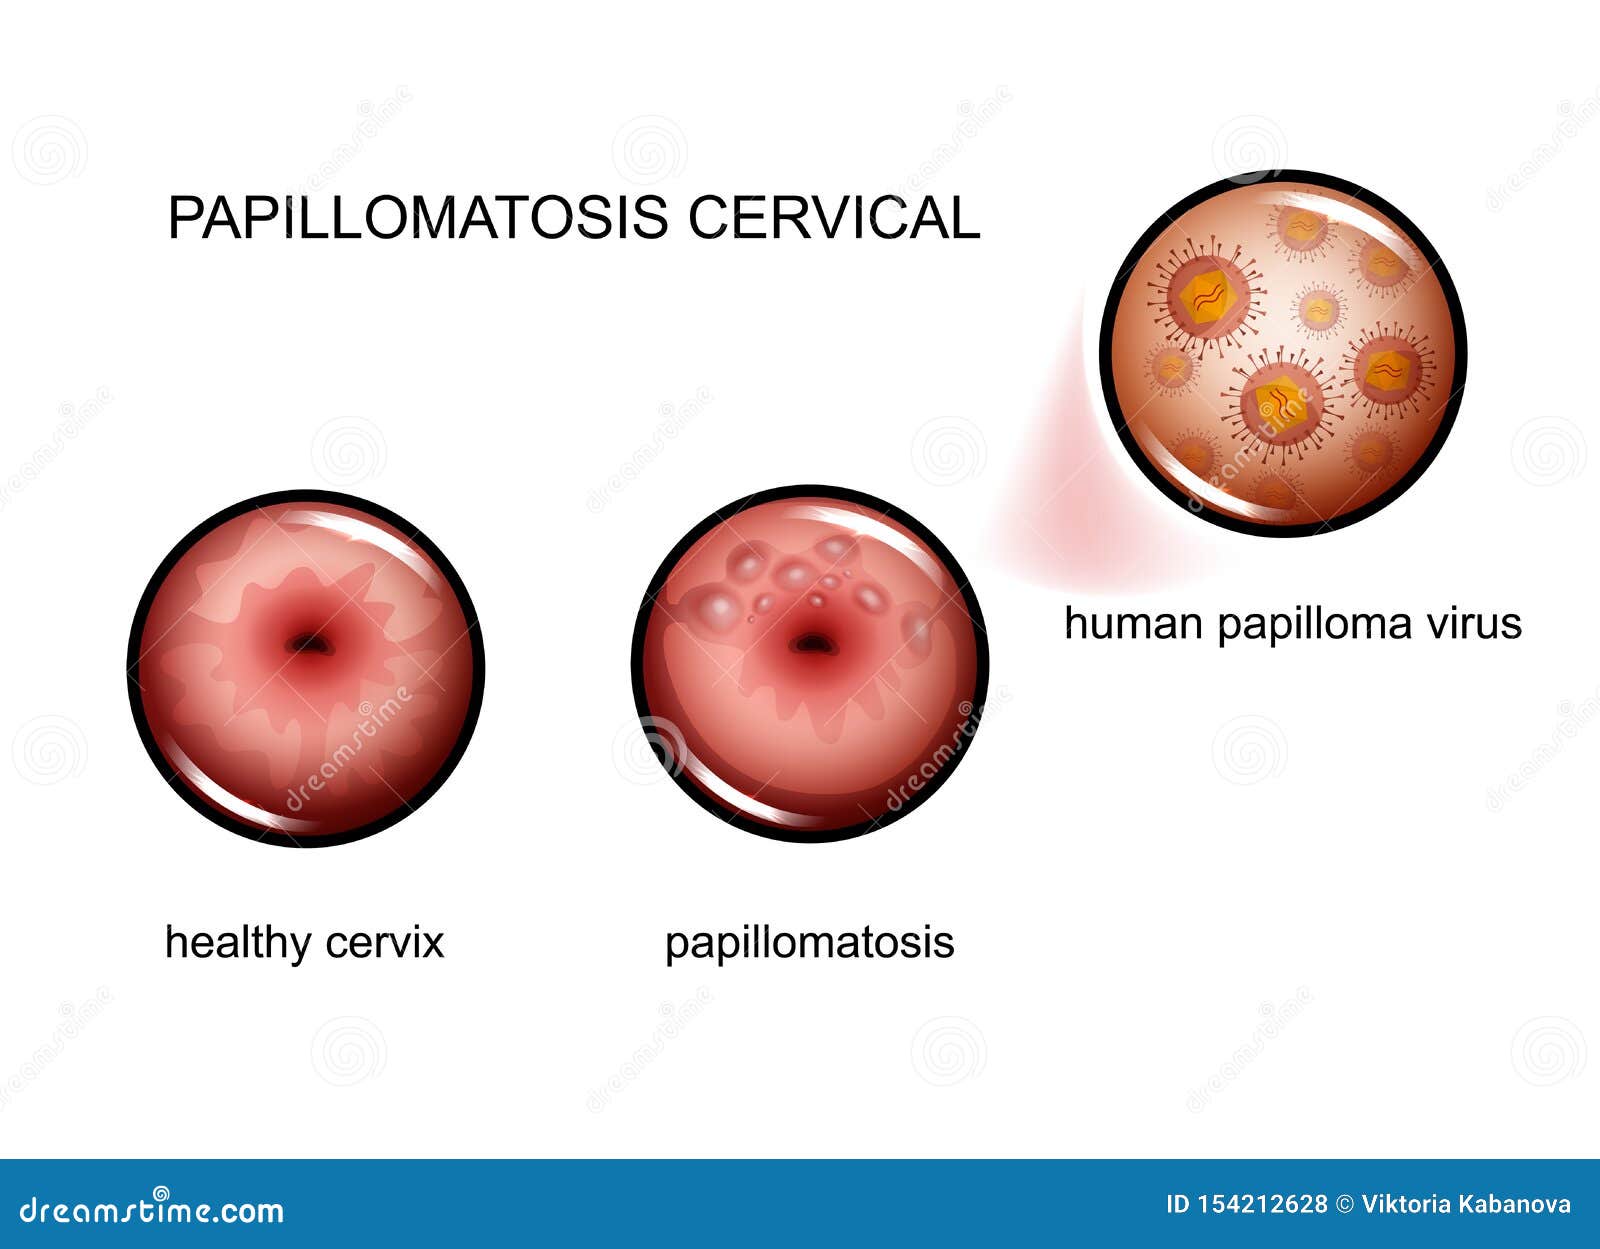 HPV: értelmetlenül halnak meg a nők | Házipatika